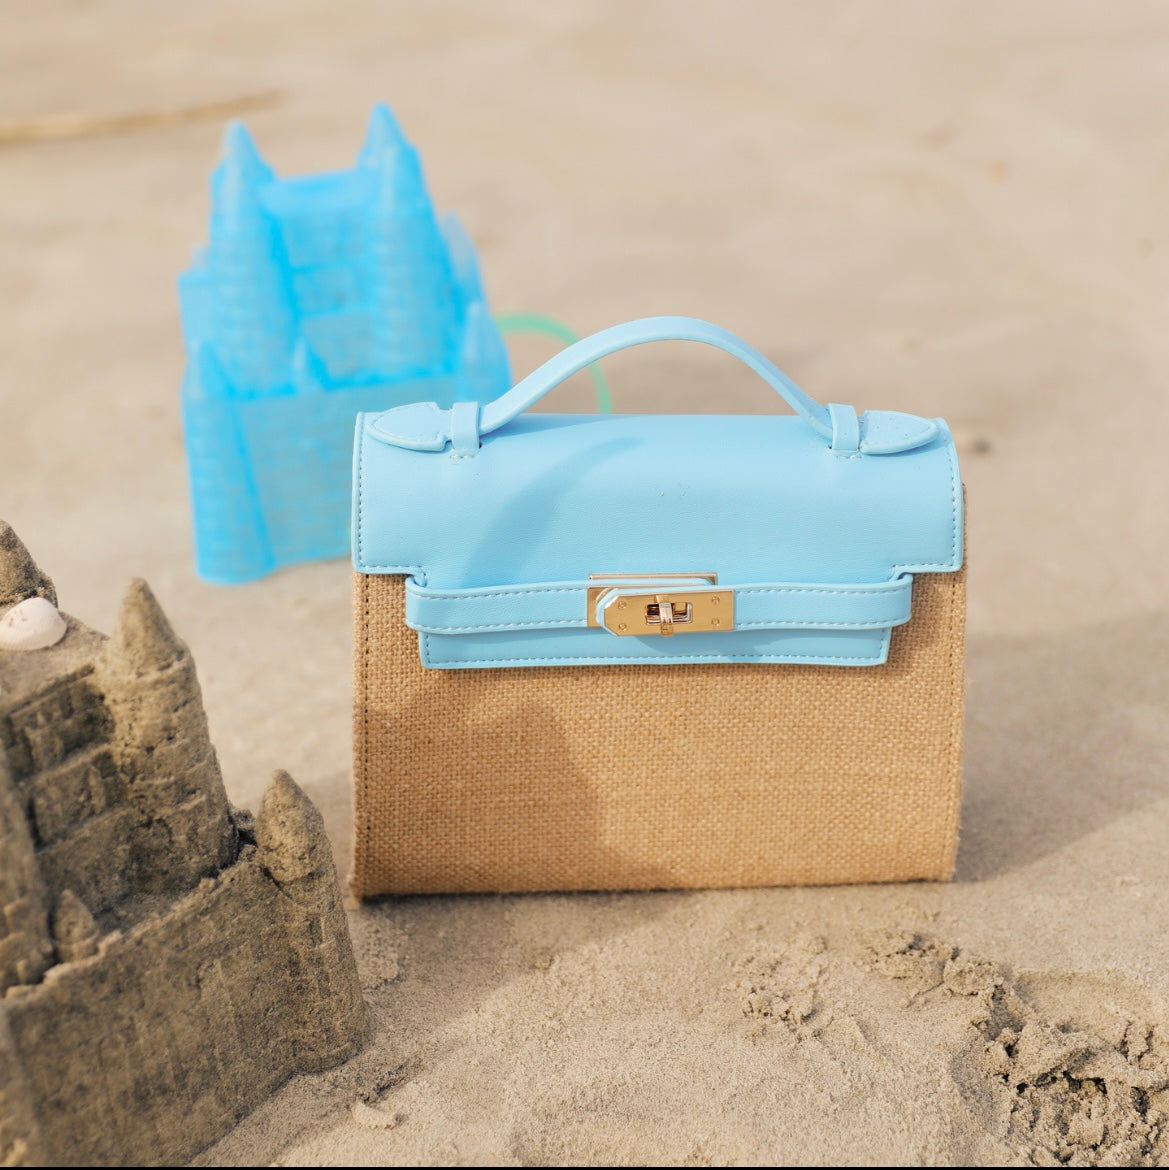 Sandcastle Summer Bag in Blue